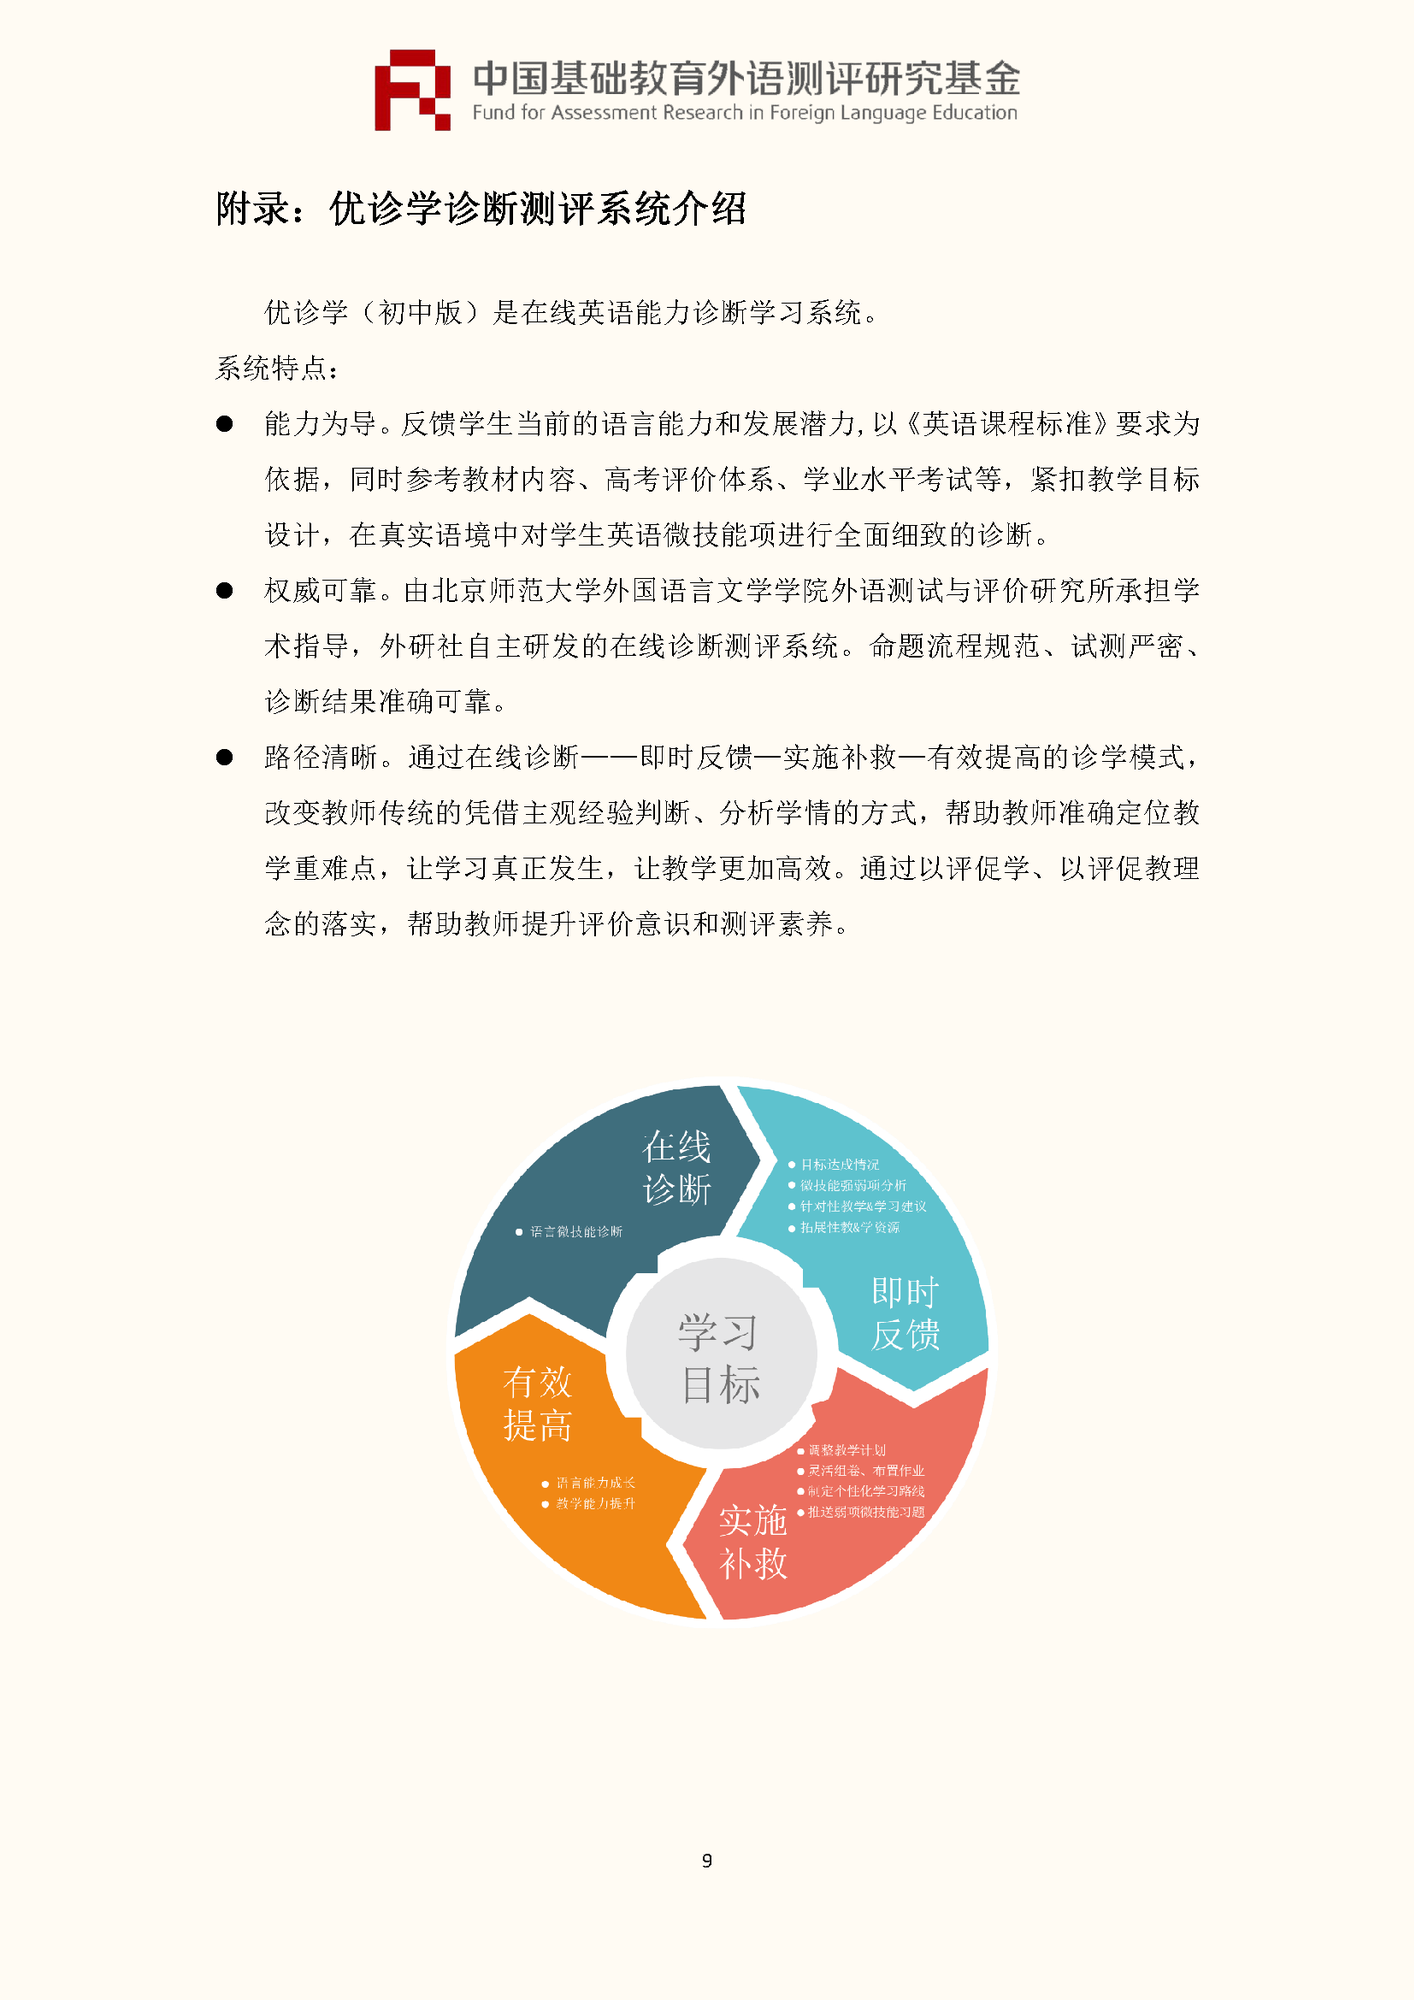 0520-”中国基础教育外语测评研究基金“项目第四期课题申报指南_页面_11